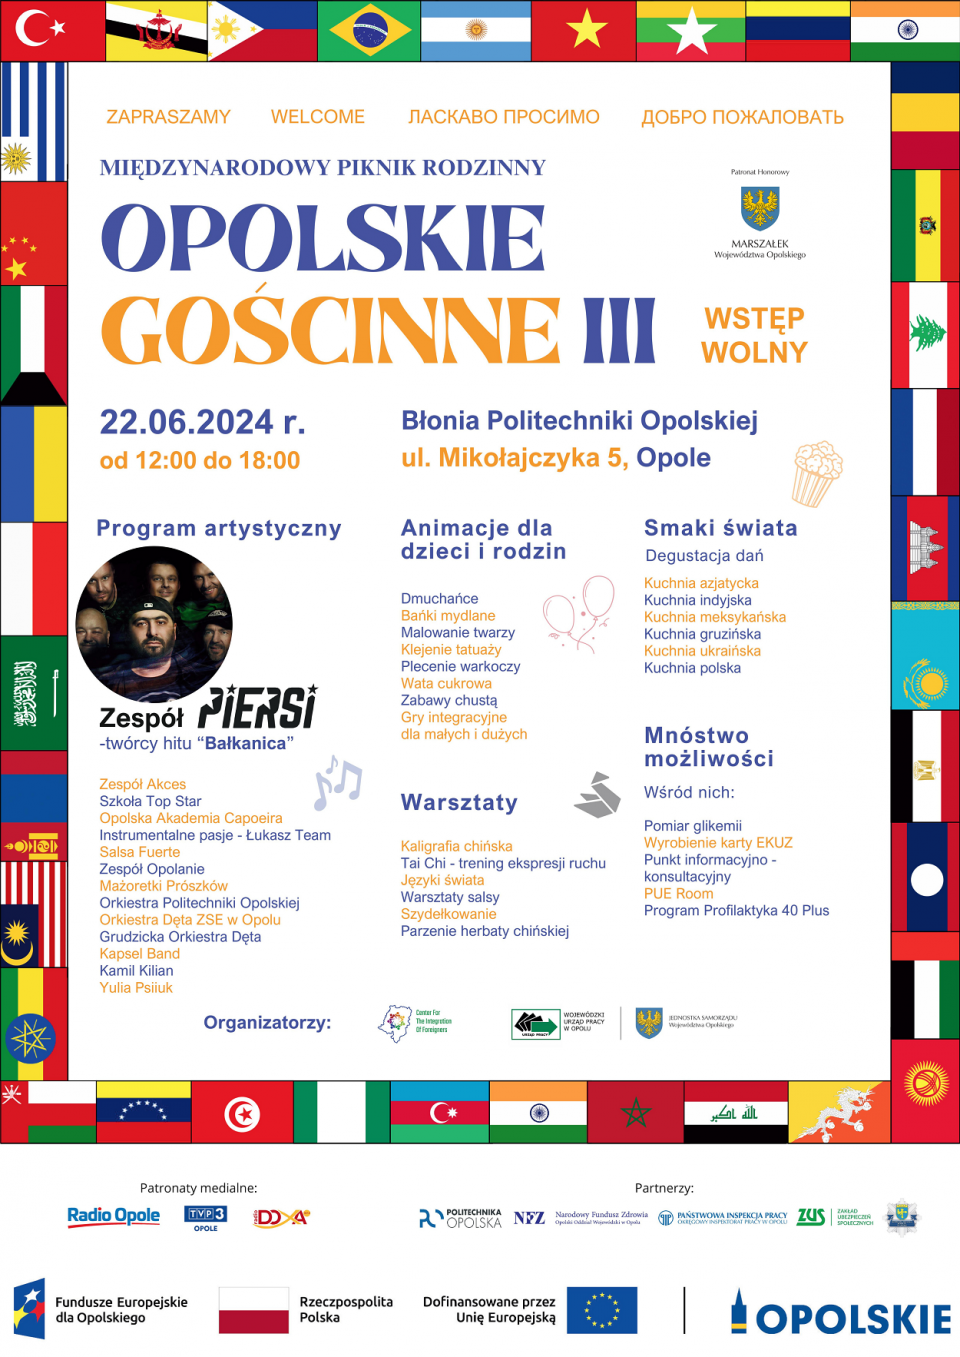 Радіо Ополе - медійний патрон міжнародного інтеграційного сімейного пікніка "Опольське гостинне" (плакат Воєводського Центру зайнятості)